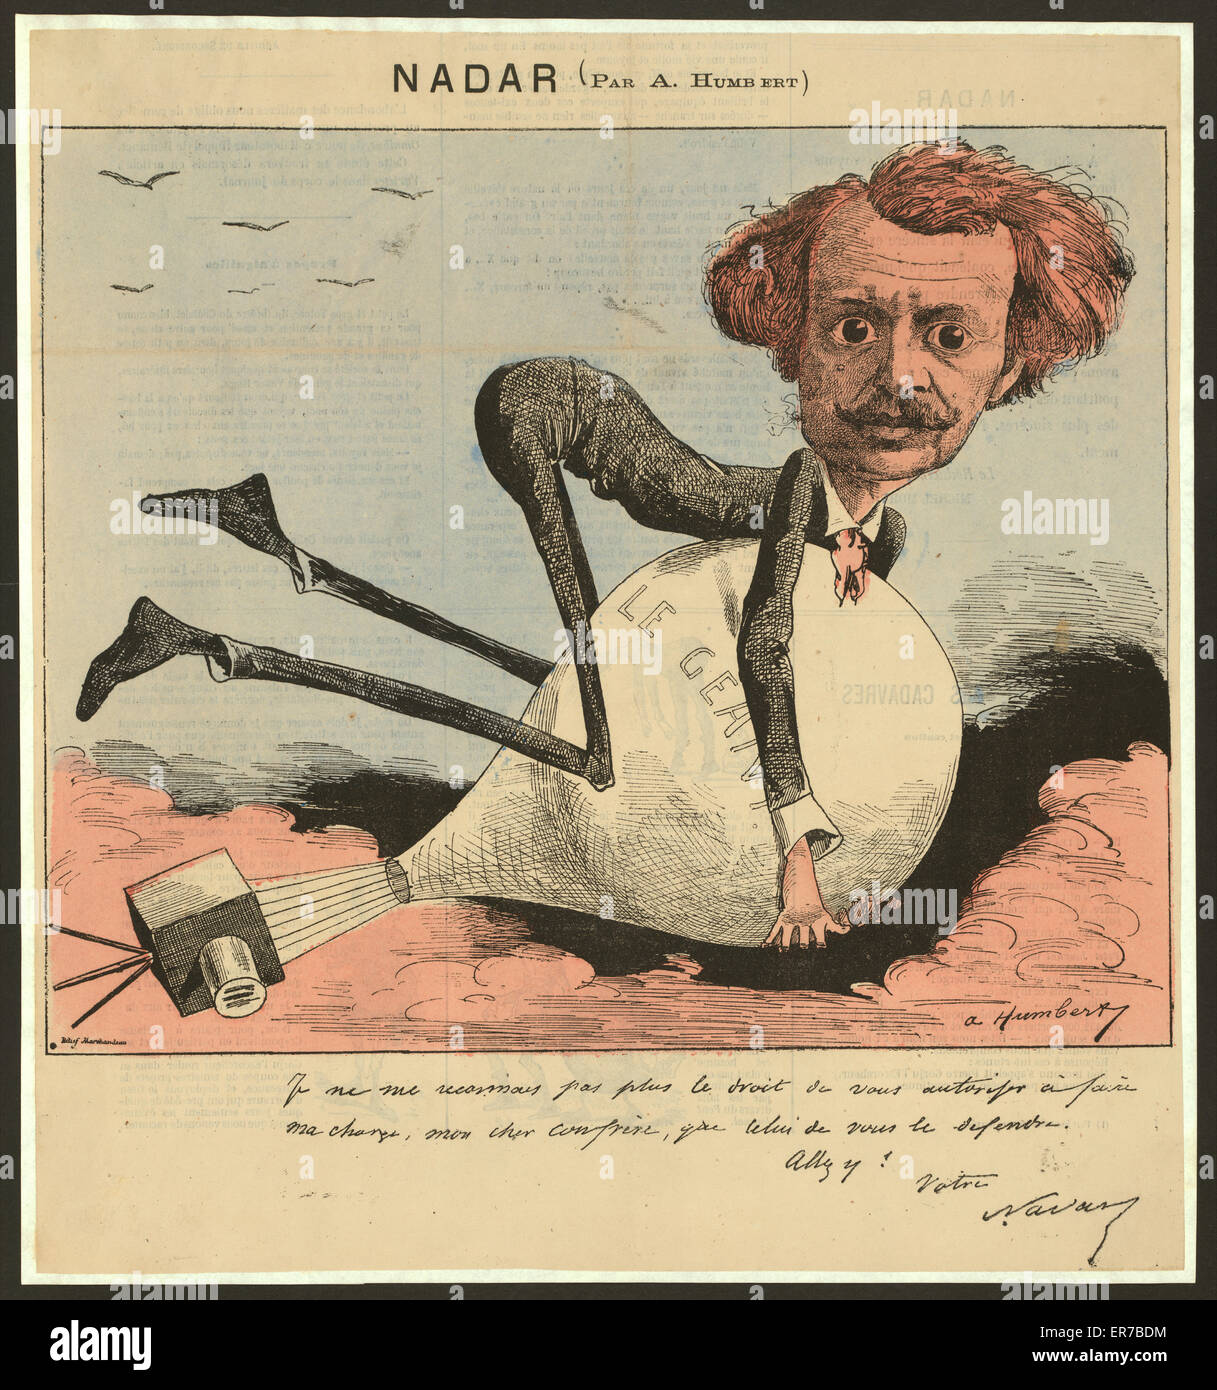 Nadar. Französische Karikatur des Fotografen und Ballonfahrer driftet Nadar  hängend auf seinem Ballon, Le Geant, als es mit der Windströmungen. Der  Korb des Ballons wird als eine Kamera abgebildet. Datum 1863  Stockfotografie -